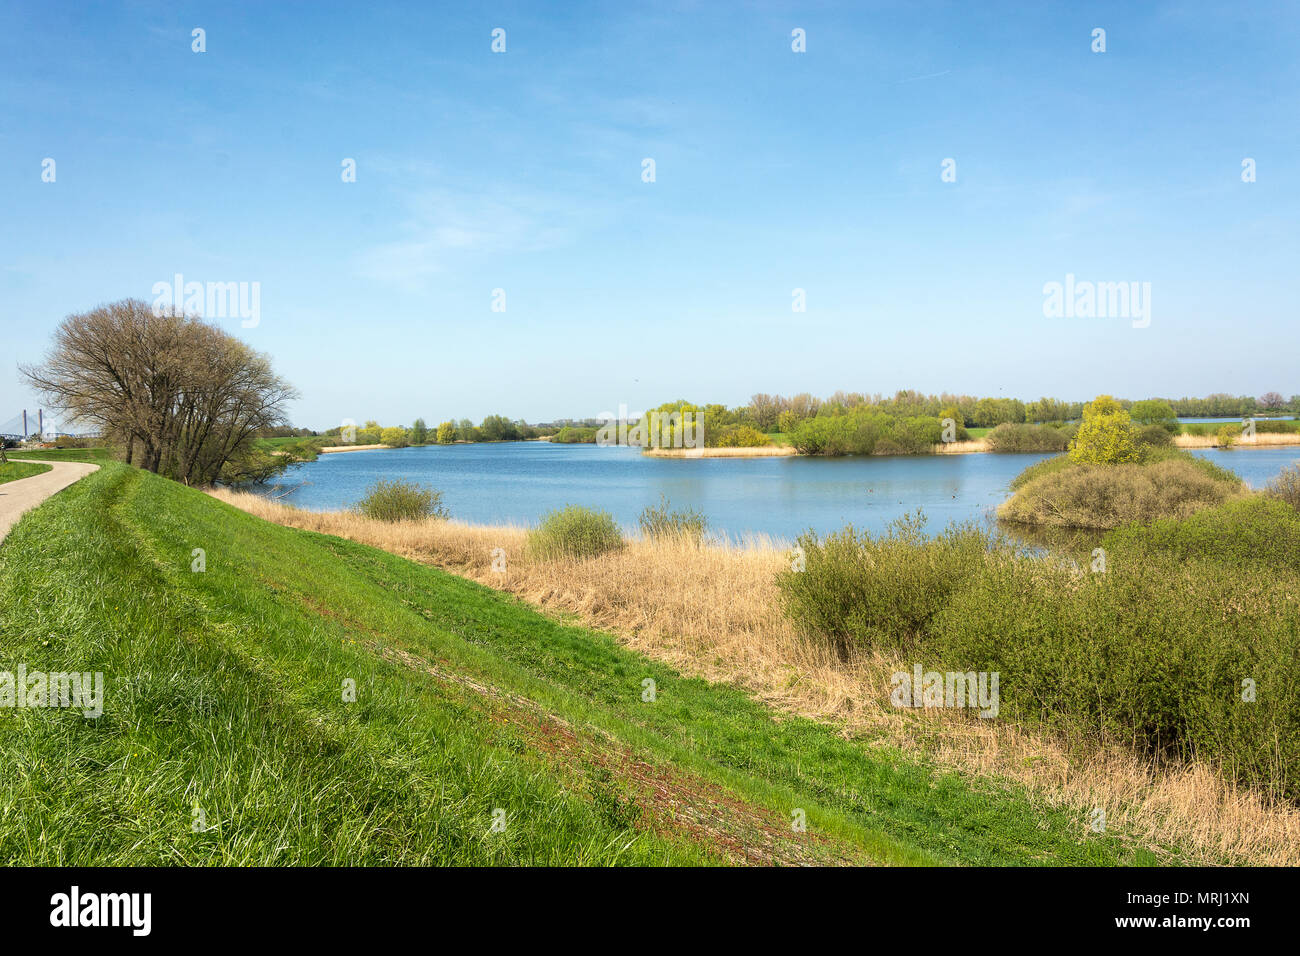 Uiterwaarden of the river Waal in the neighbourhood of Zaltbommel, the ...